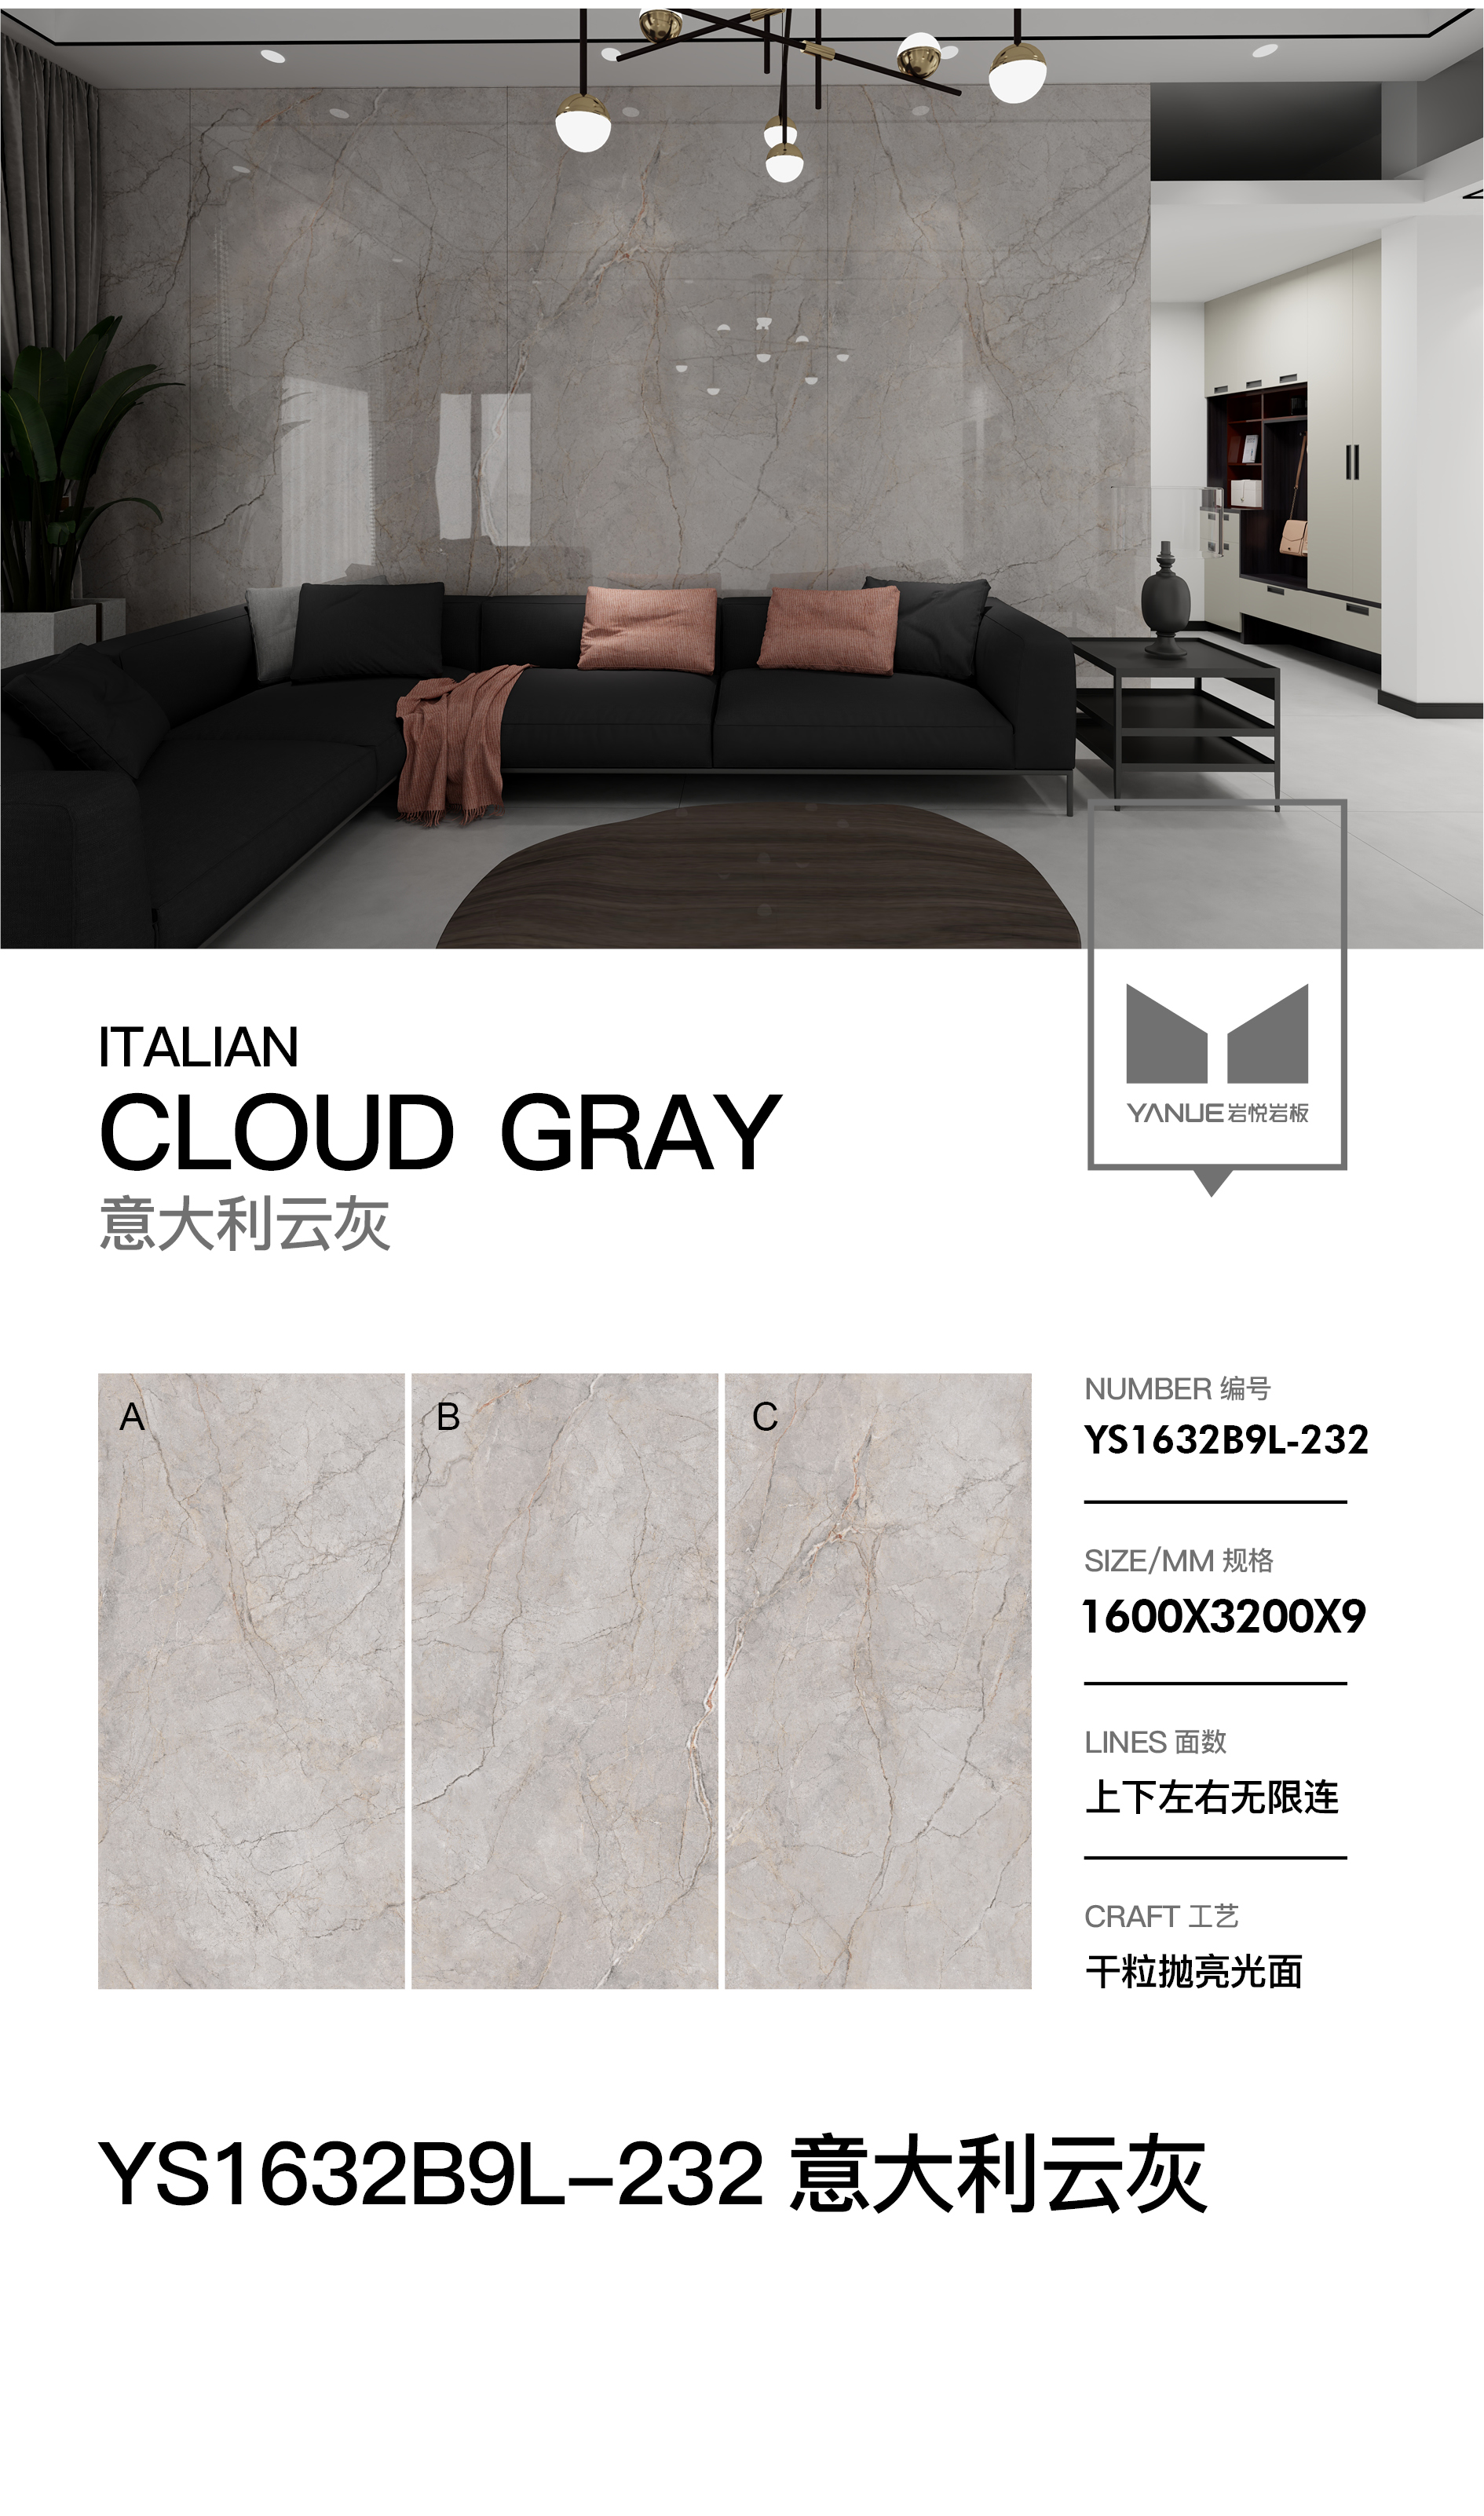 Advanced Grey 4.0 - 8913